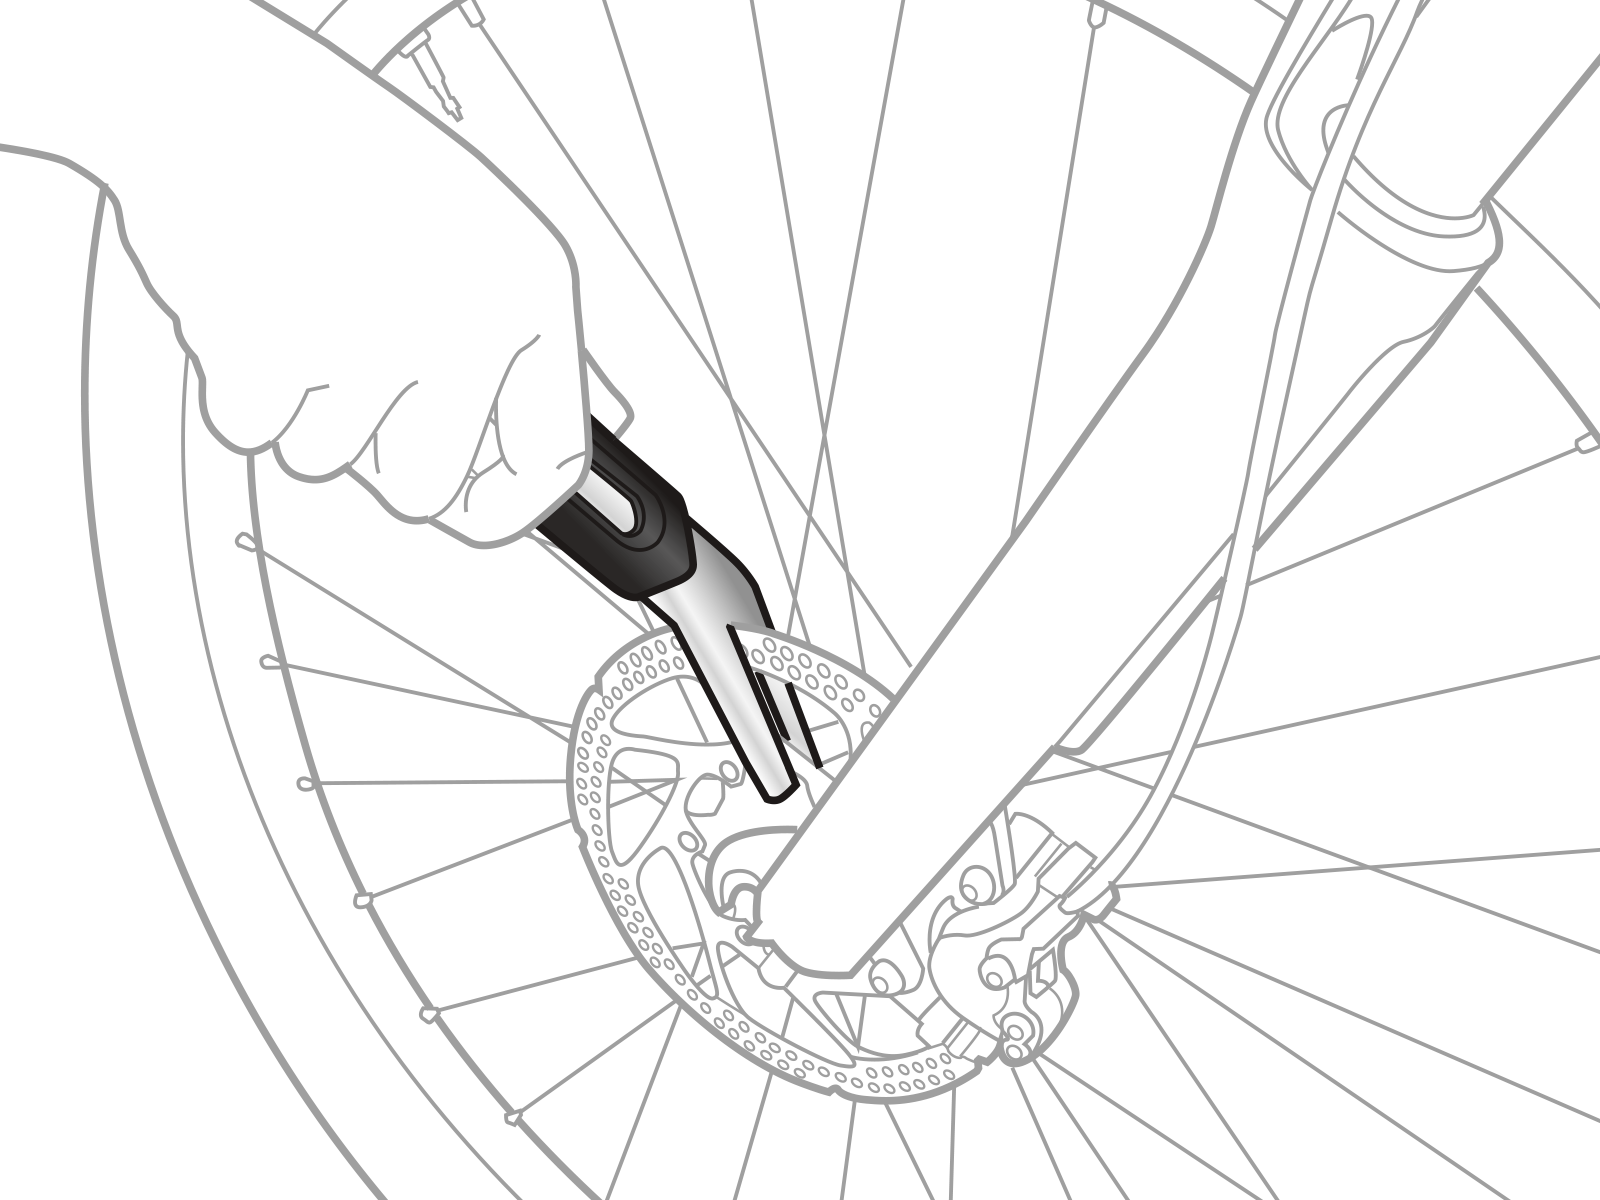 Как снять тормоз с колеса велосипеда. Topeak приспособления для правки тормозных дисков Rotor Tru. Инструмент для выравнивания ротора велосипедного дискового тормоза. Ключ для правки тормозных дисков велосипеда триал. Инструмент для правки велосипедных тормозных дисков.